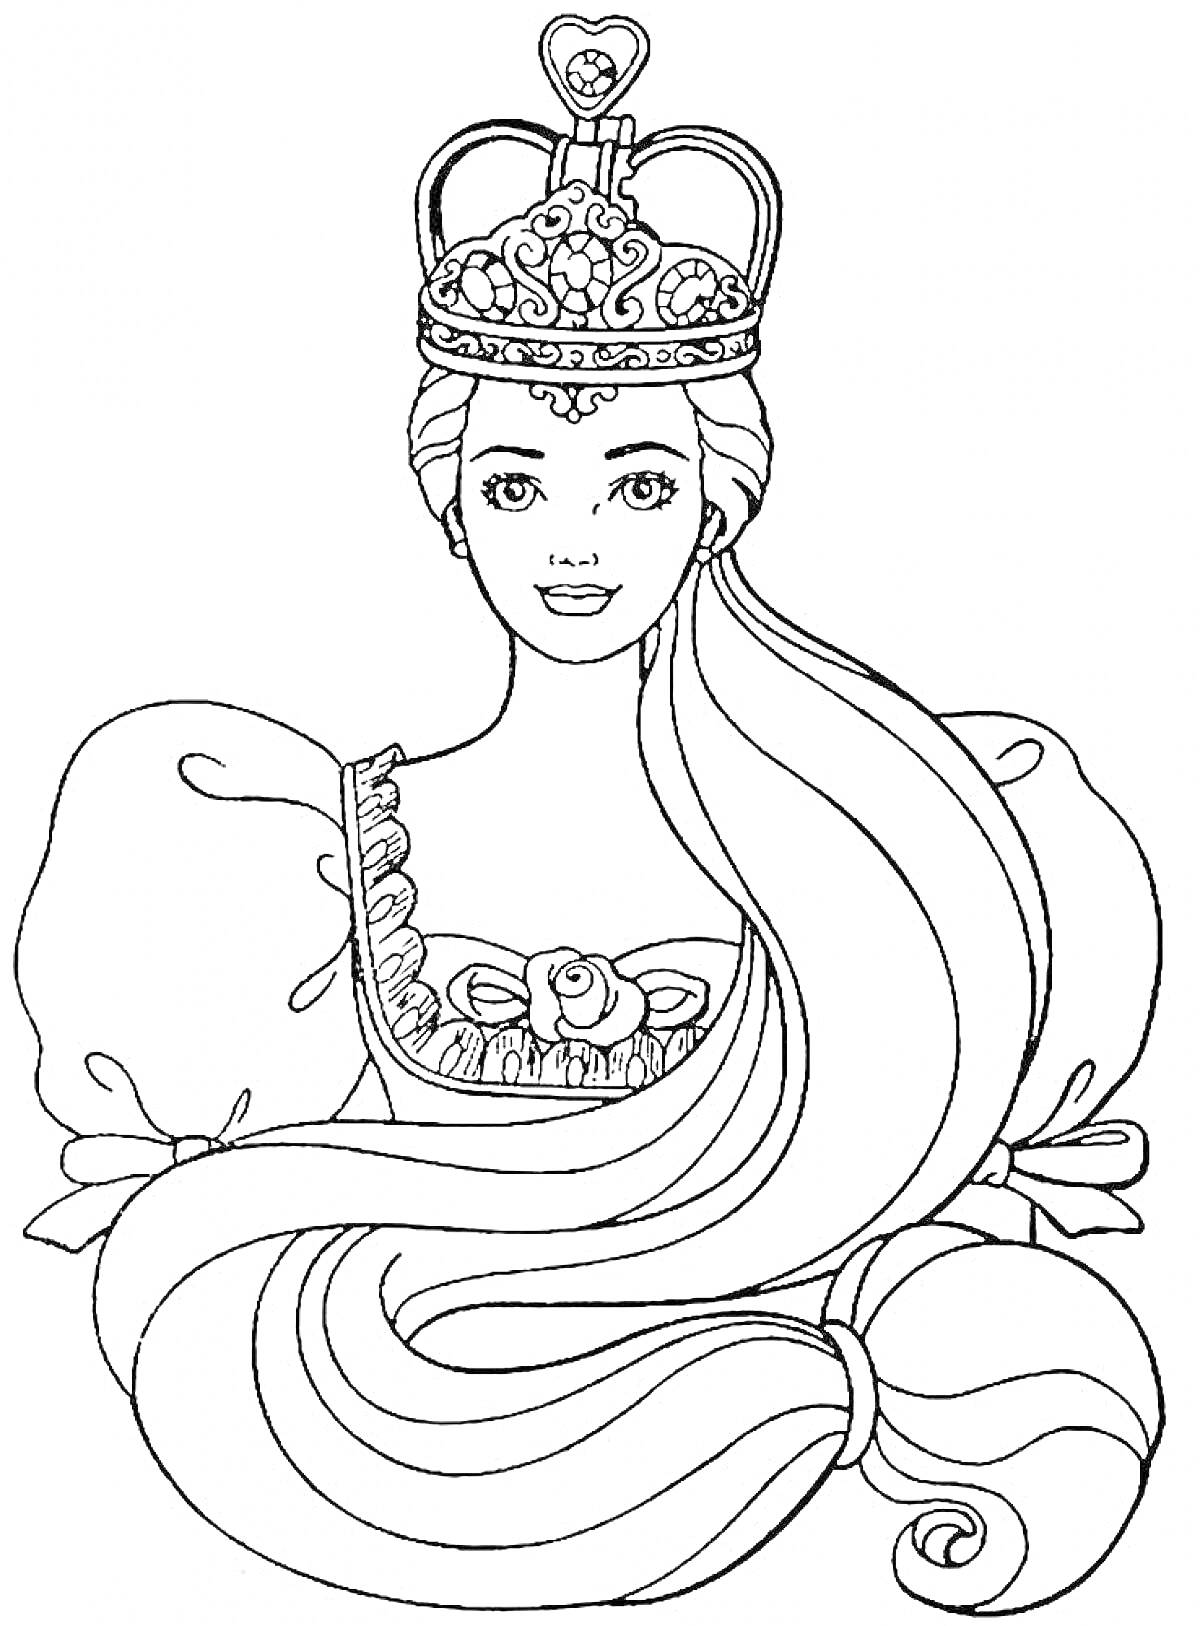 Раскраска Принцесса с короной и длинными волосами в пышном платье